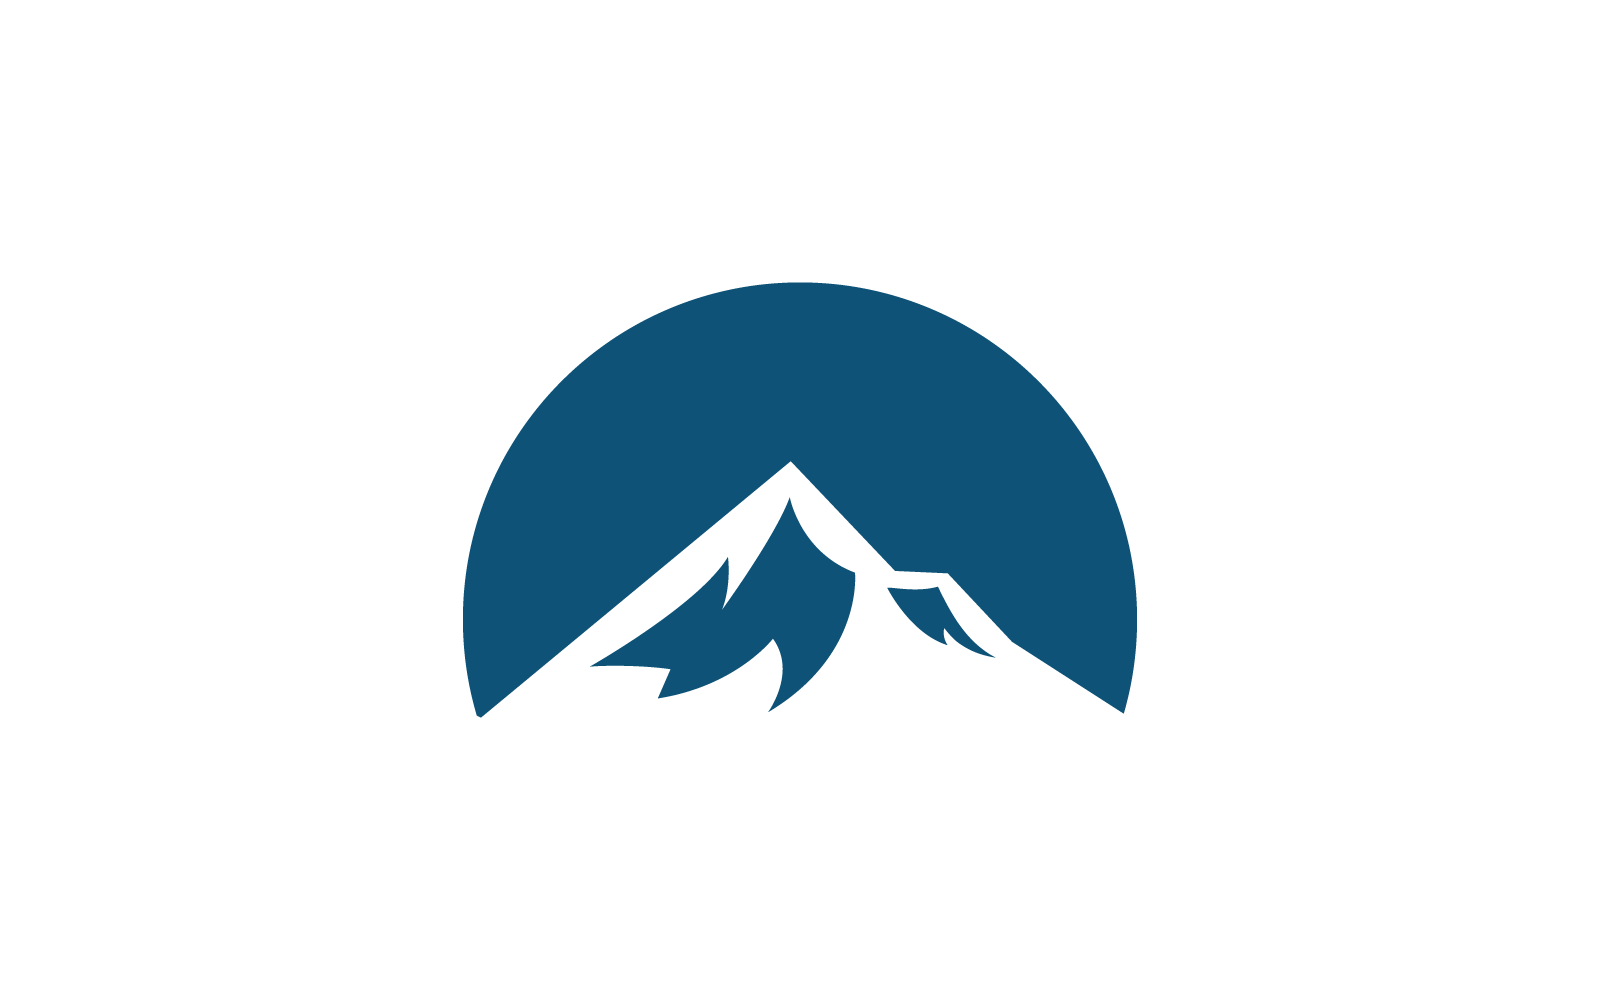 Mountain vector design illustration logo Logo Template